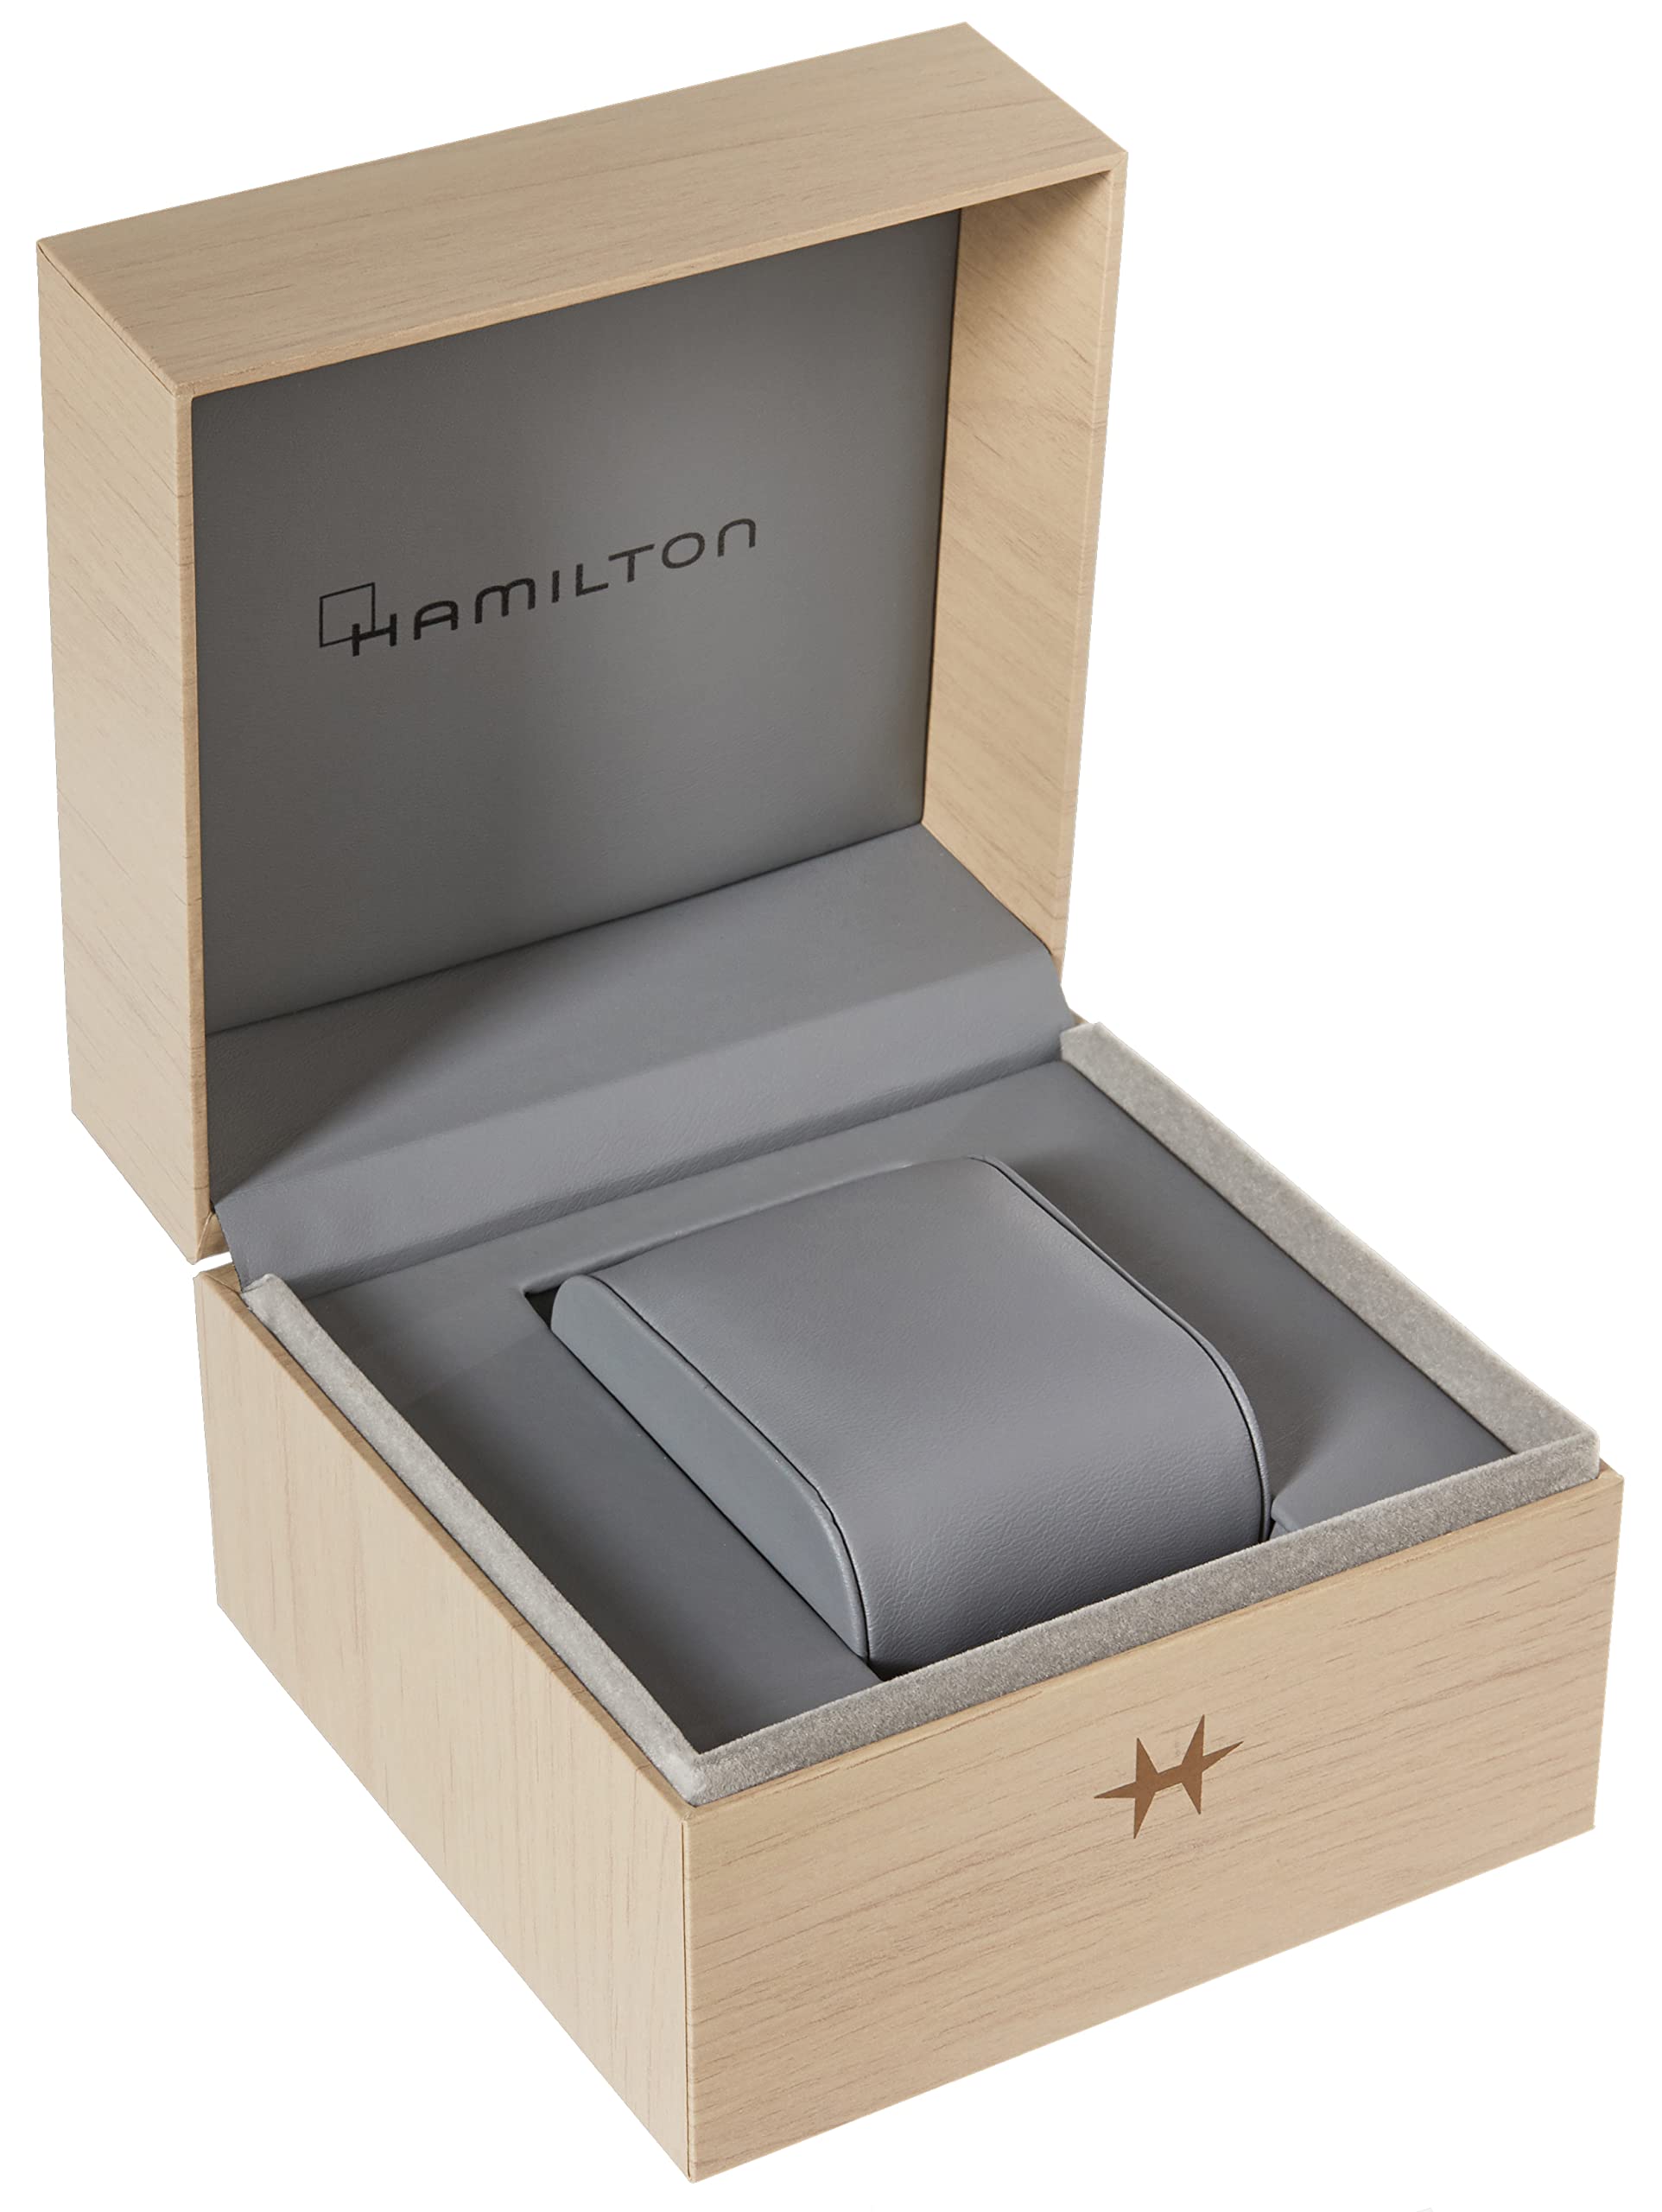 Hamilton Watch Jazzmaster Open Heart Lady Swiss Automatic Watch 36mm Case, Blue Dial, Silver Stainless Steel Bracelet (Model: H32215141)